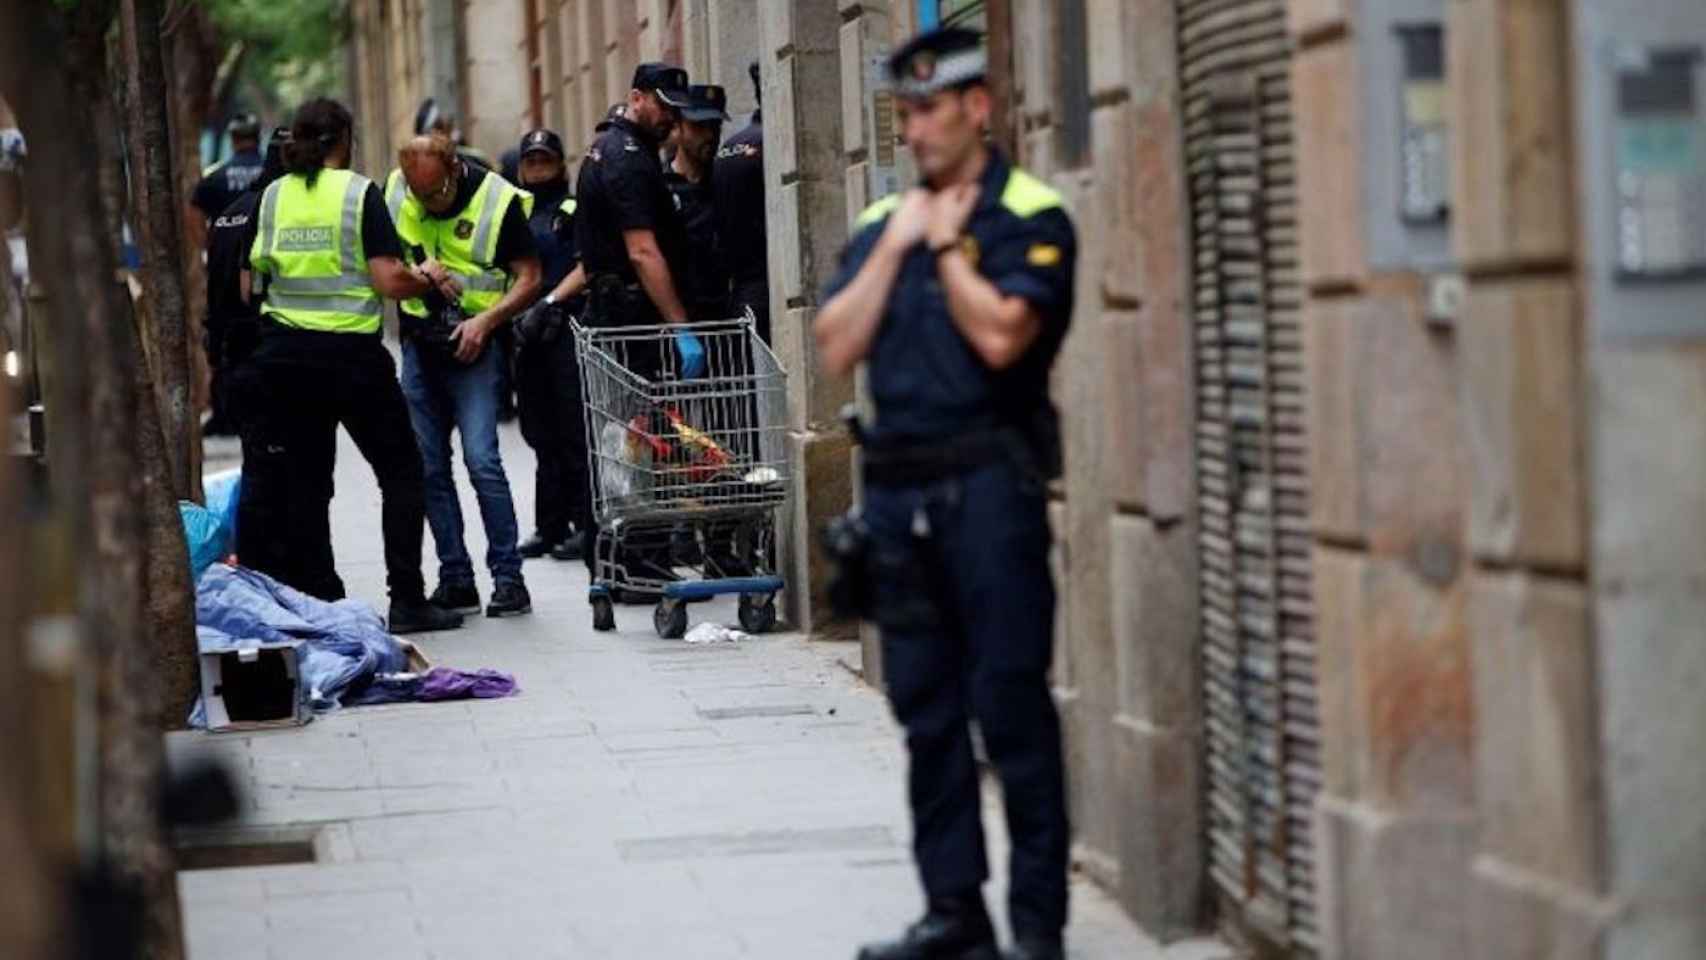 Agentes de policía de distintos cuerpos durante un episodio de inseguridad en Barcelona / EFE